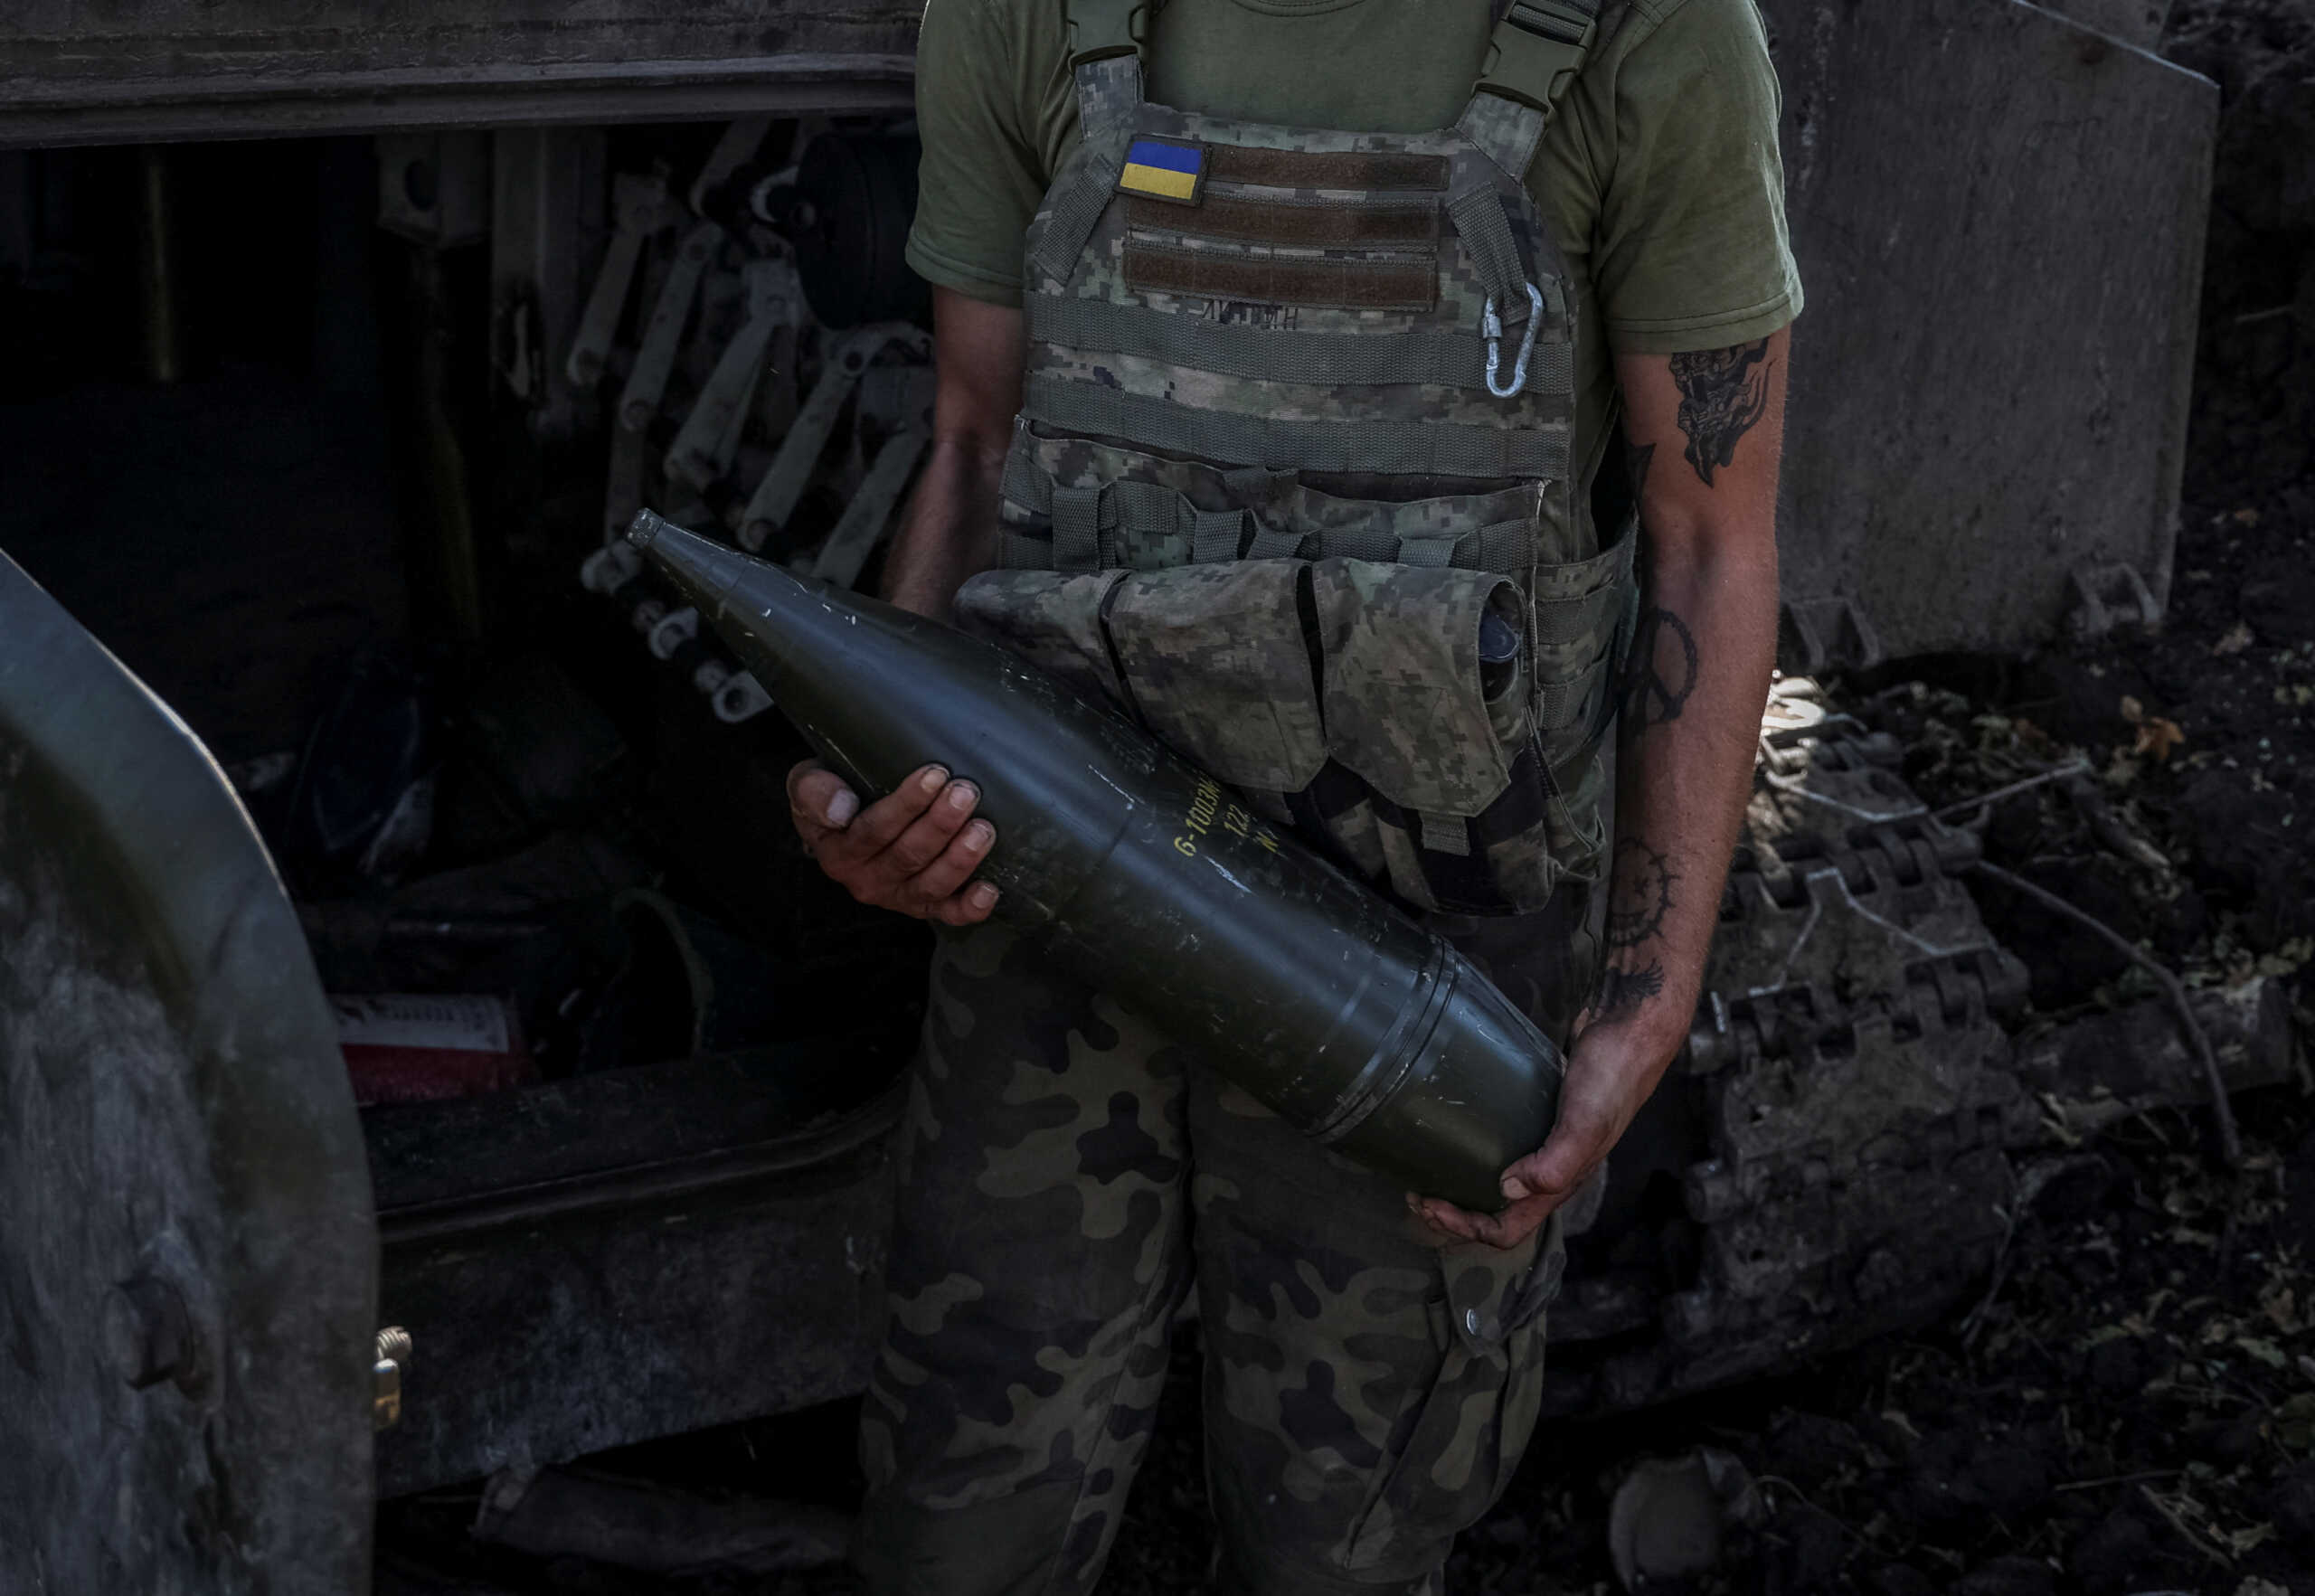 Ουκρανία: Θέλει να κατασκευάζει μόνη της βήματα πυροβολικού – Υπάρχει παγκόσμια έλλειψη